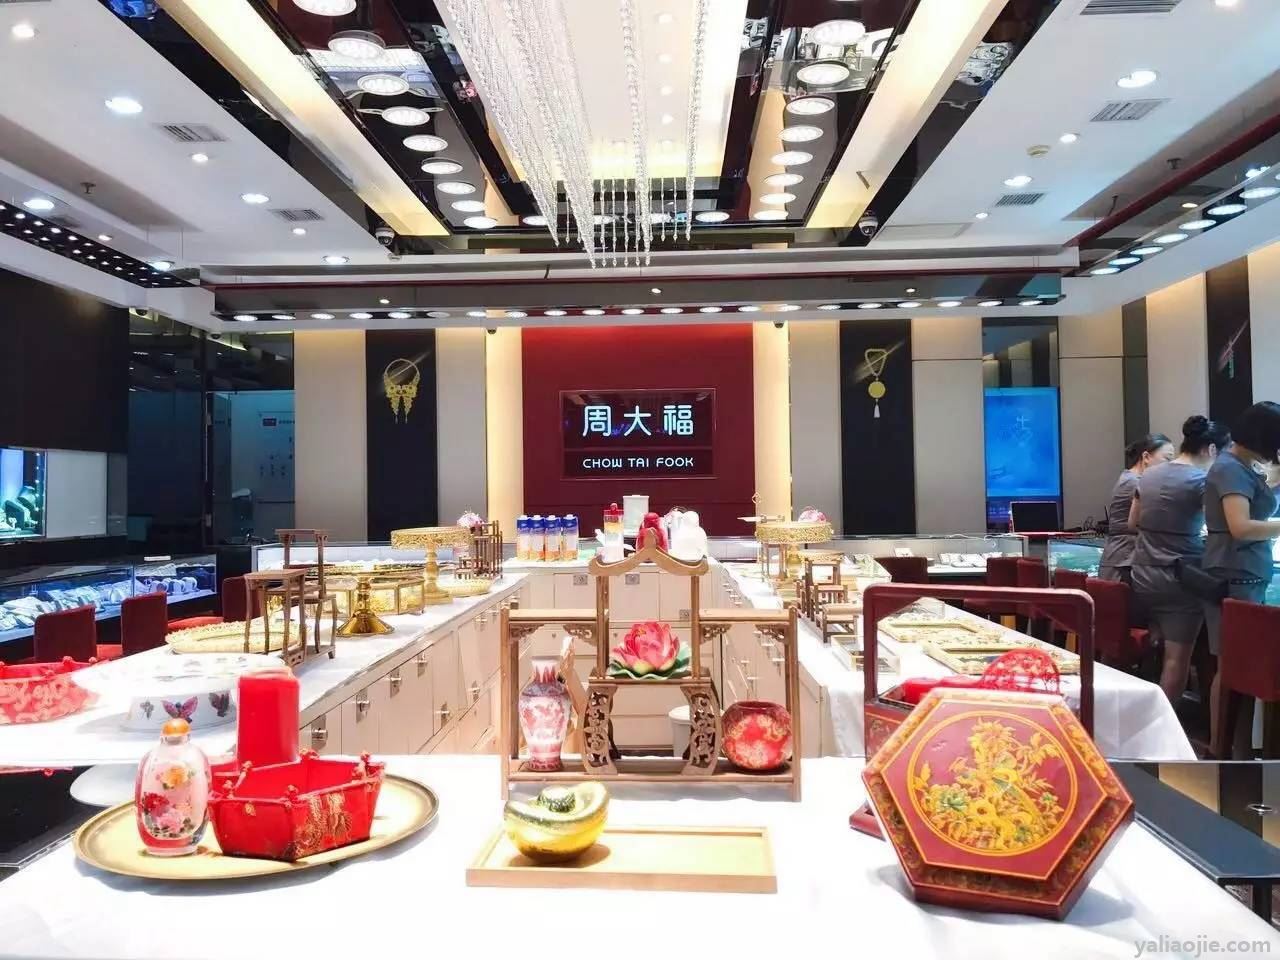 周六福是总部在深圳的大陆品牌,在整个大陆市场也有3000多家门店.